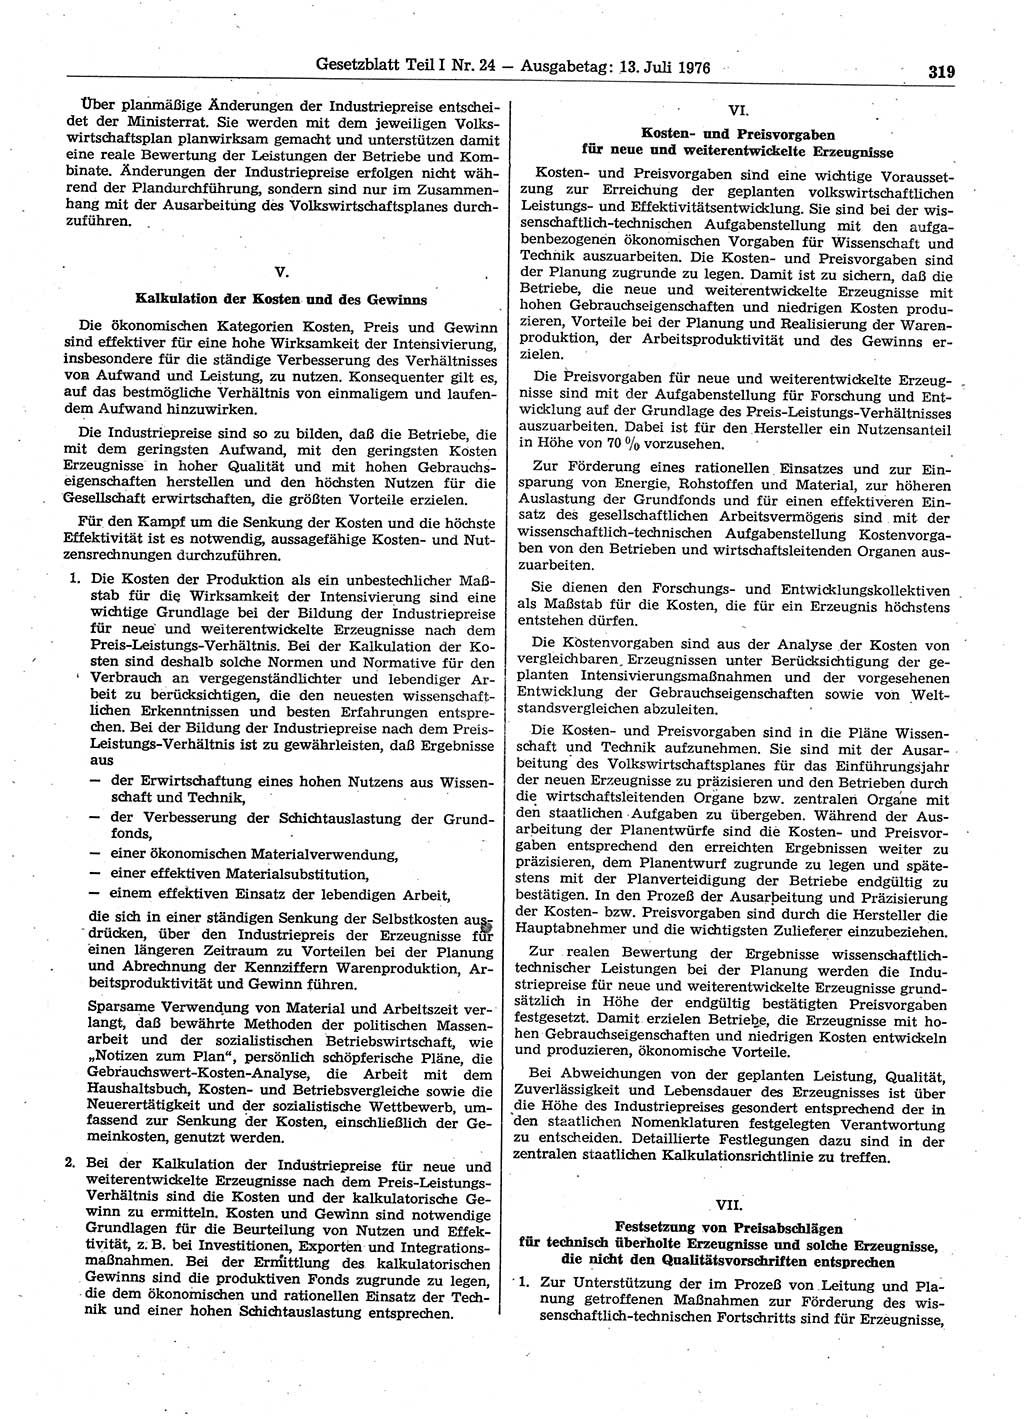 Gesetzblatt (GBl.) der Deutschen Demokratischen Republik (DDR) Teil Ⅰ 1976, Seite 319 (GBl. DDR Ⅰ 1976, S. 319)